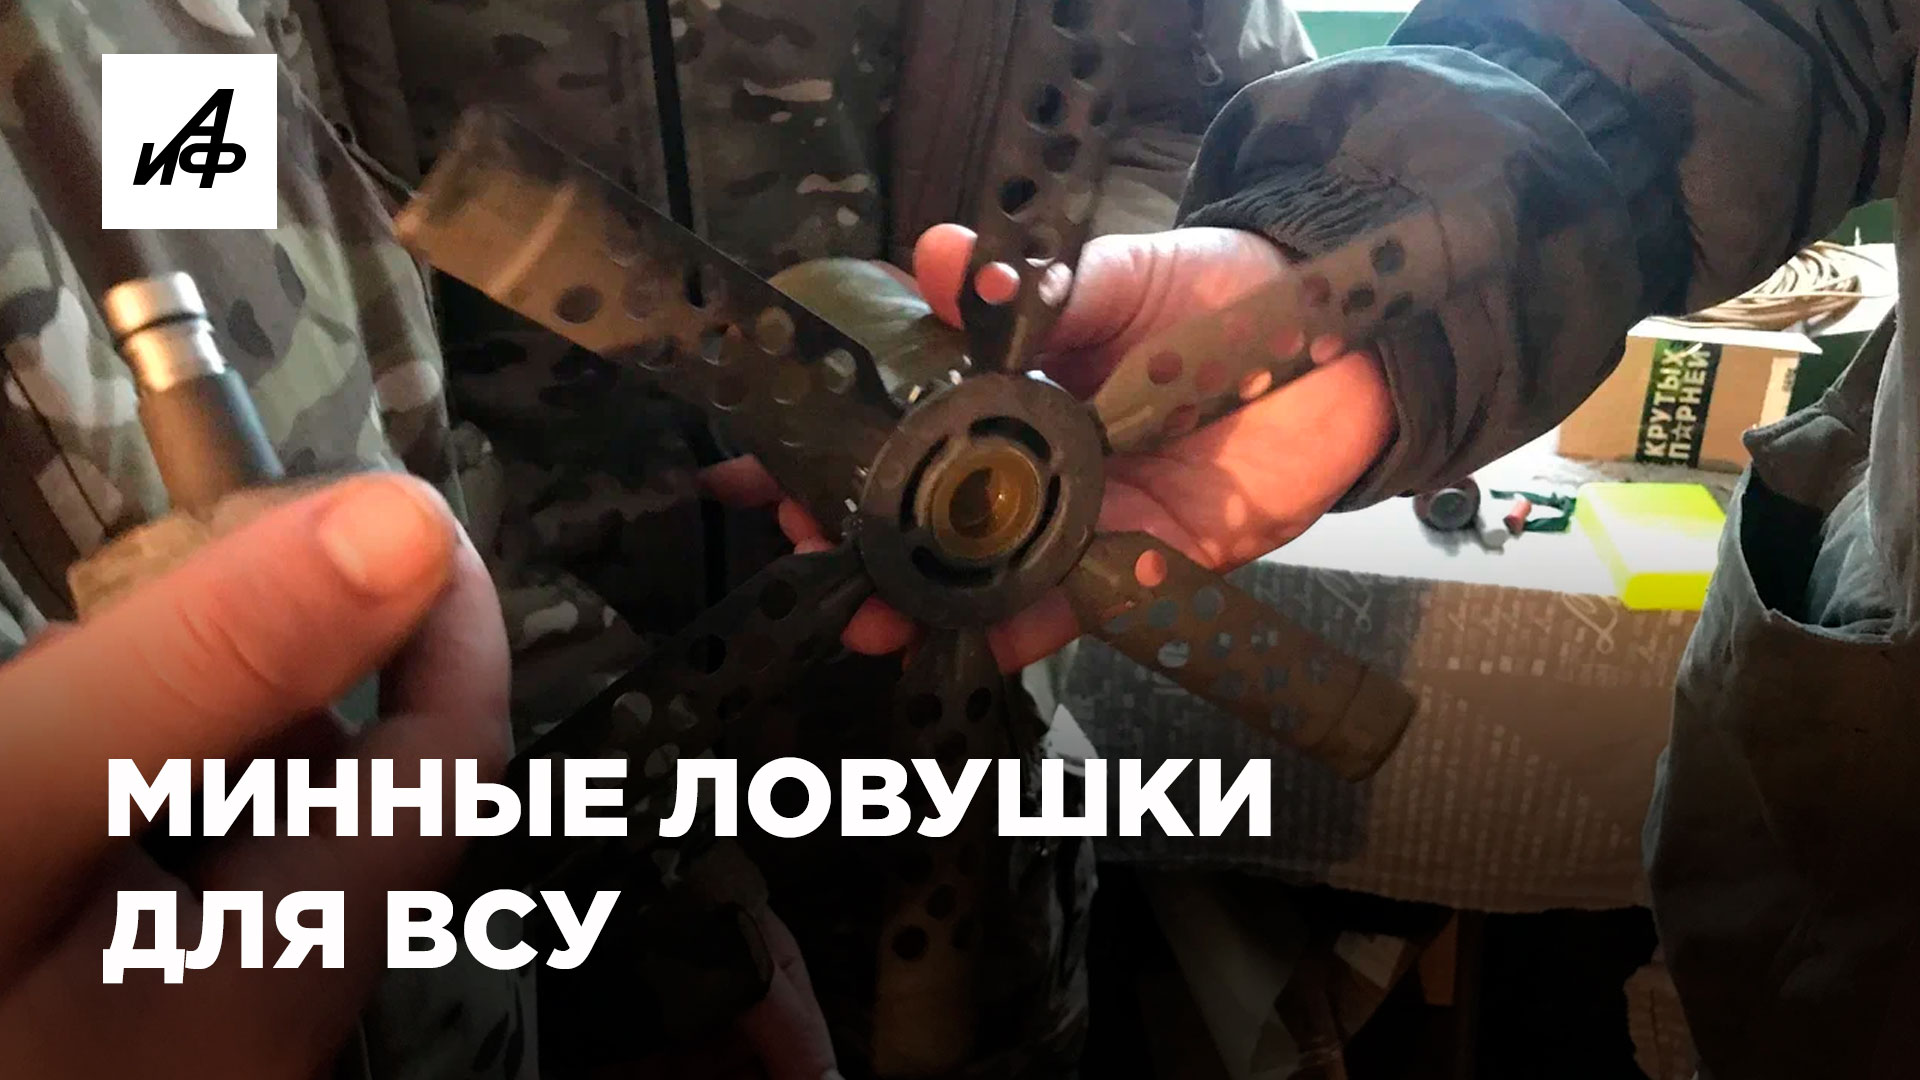 Минные ловушки для ВСУ. Сапёры рассказали о работе на Донбассе